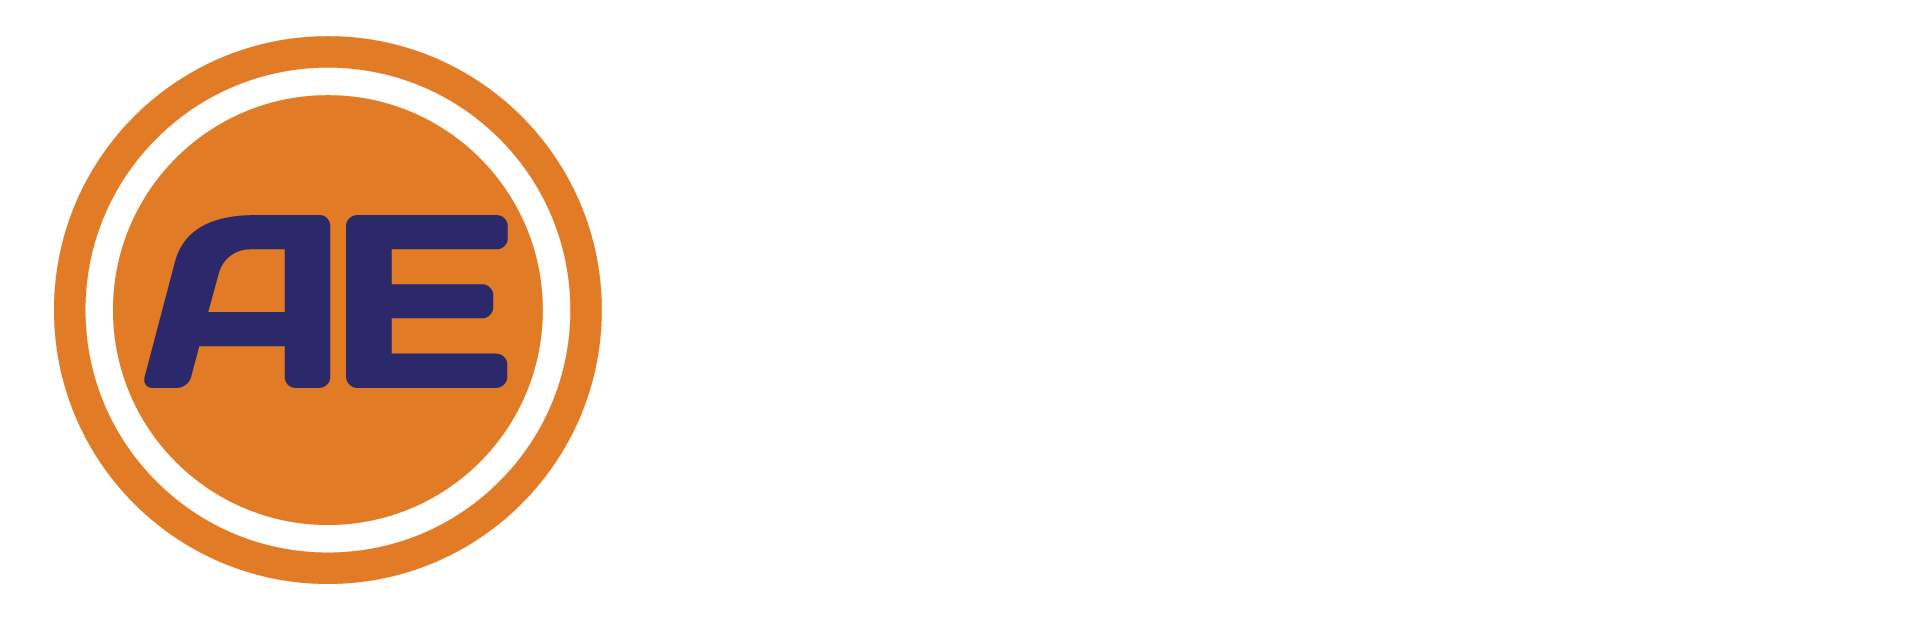 Adams Enclosures Limited